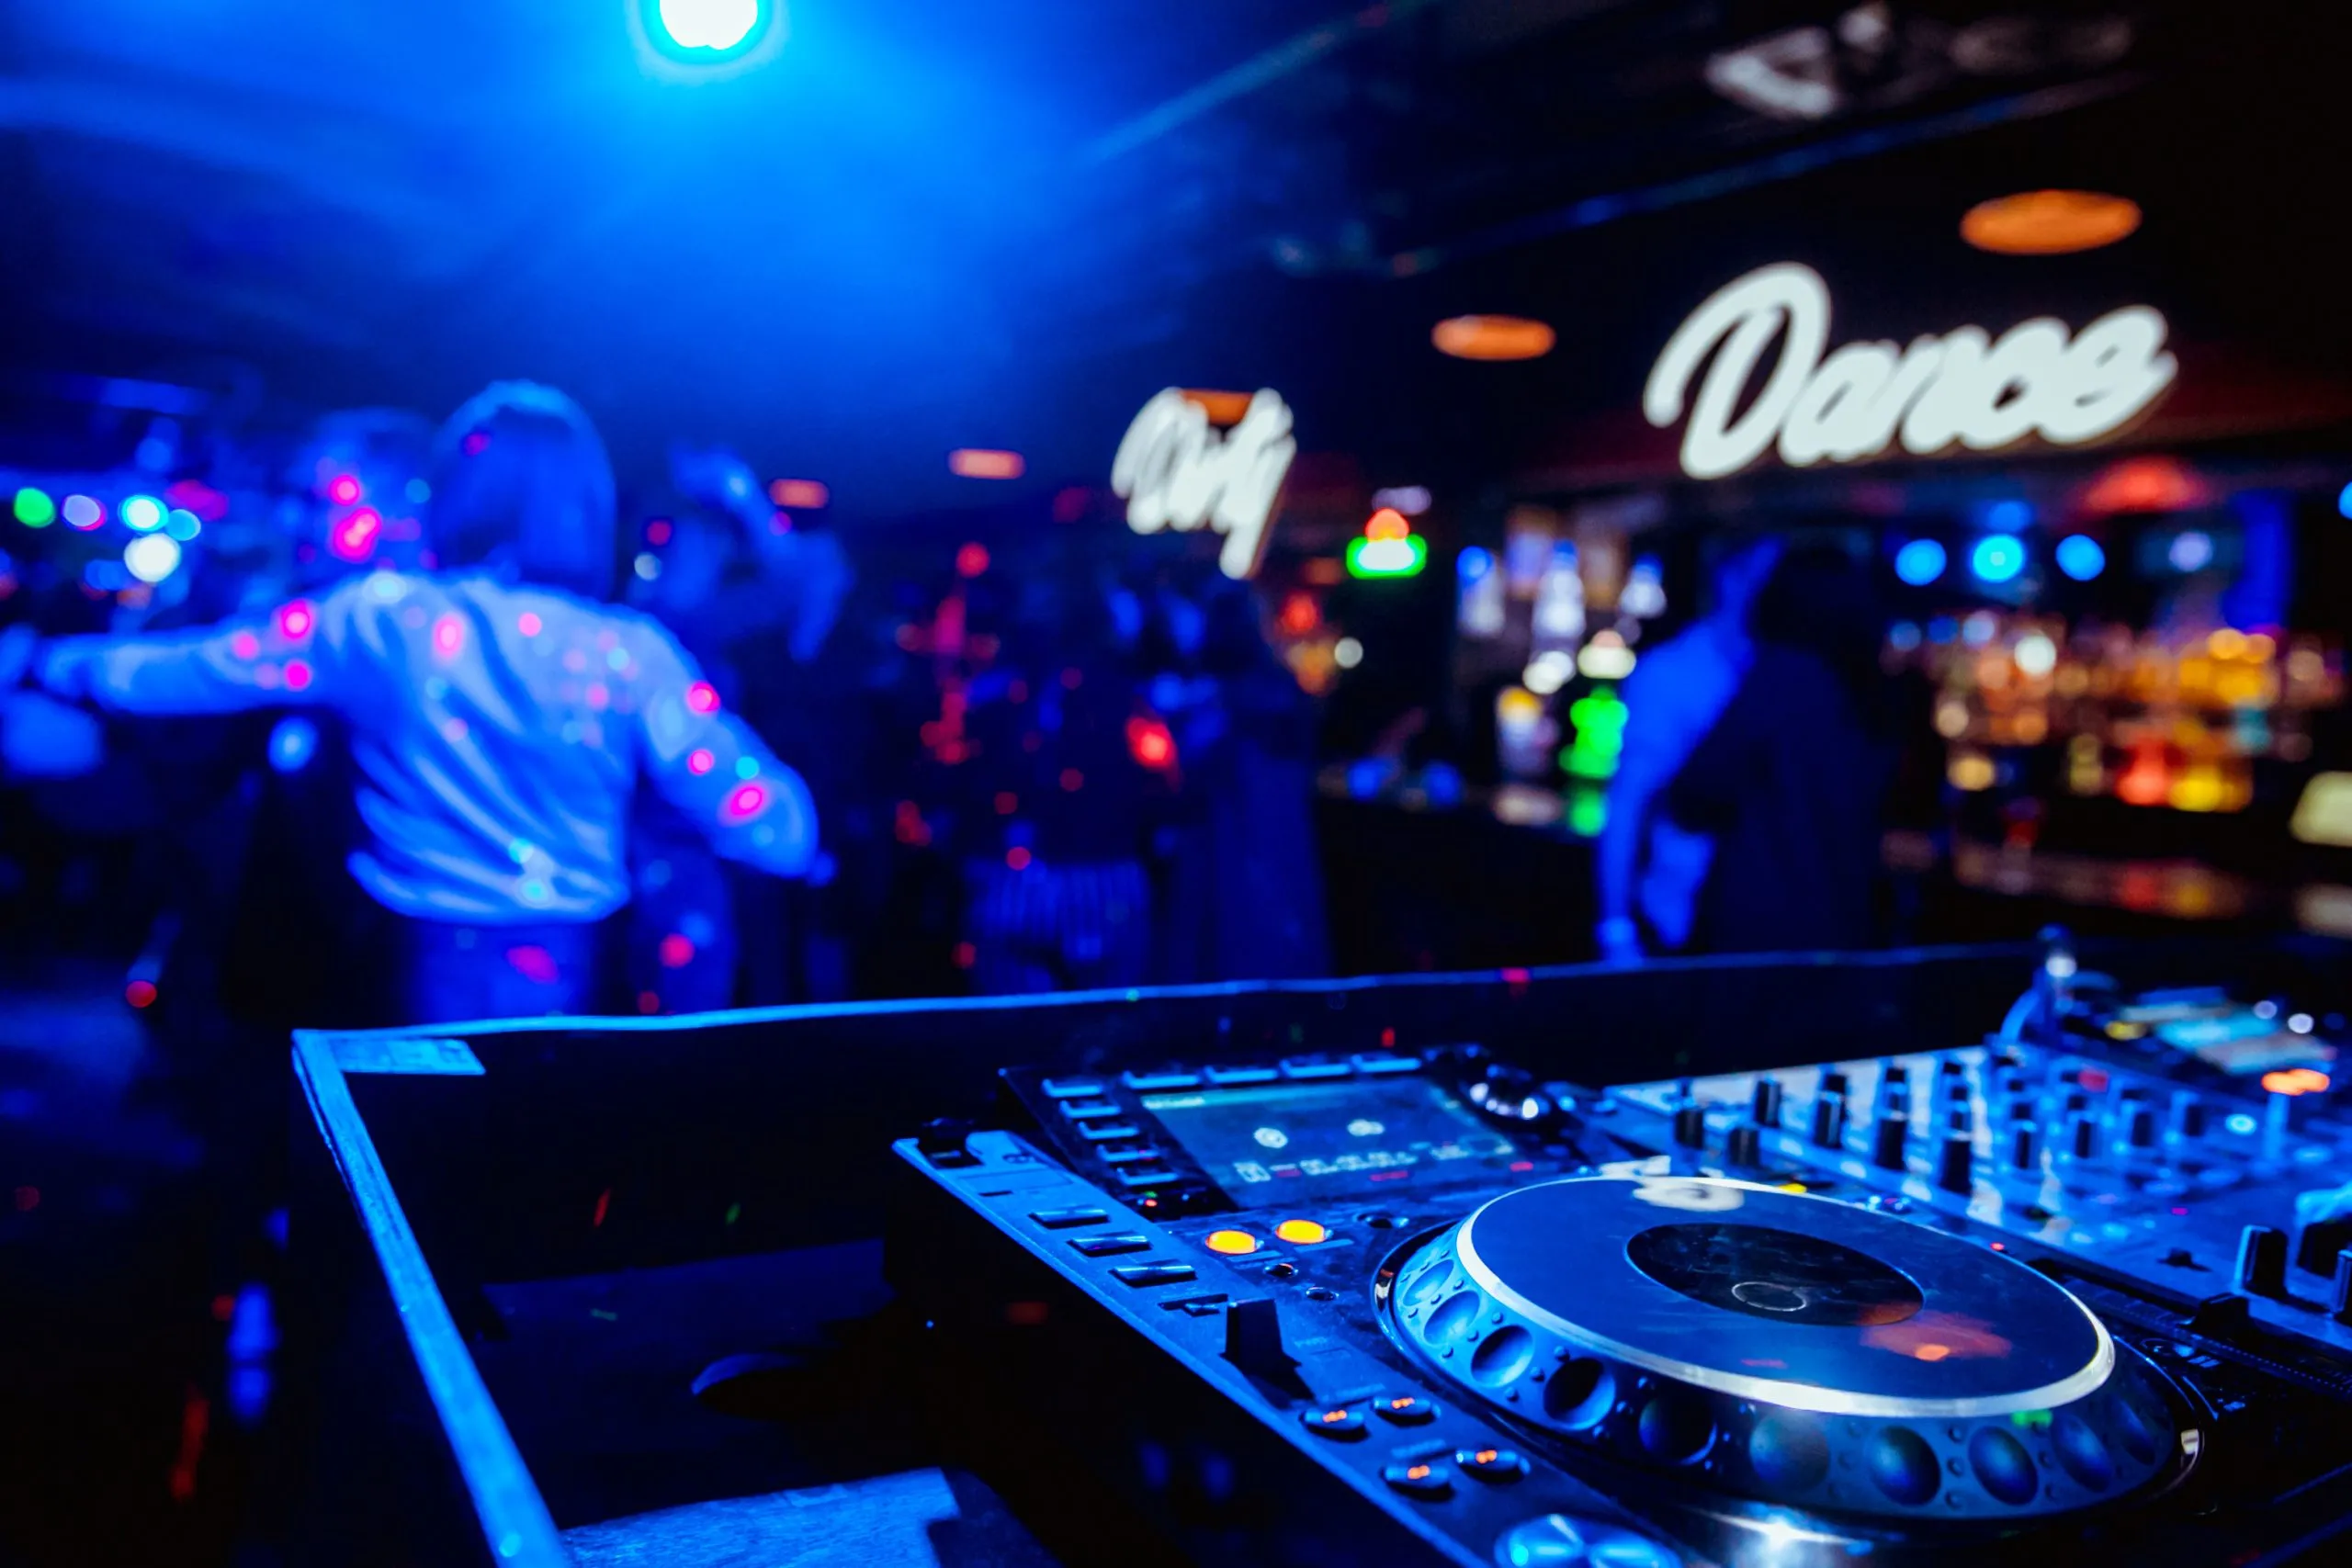 contrôle DJ pour mixer de la musique avec des personnes floues dansant lors d'une fête dans une boîte de nuit